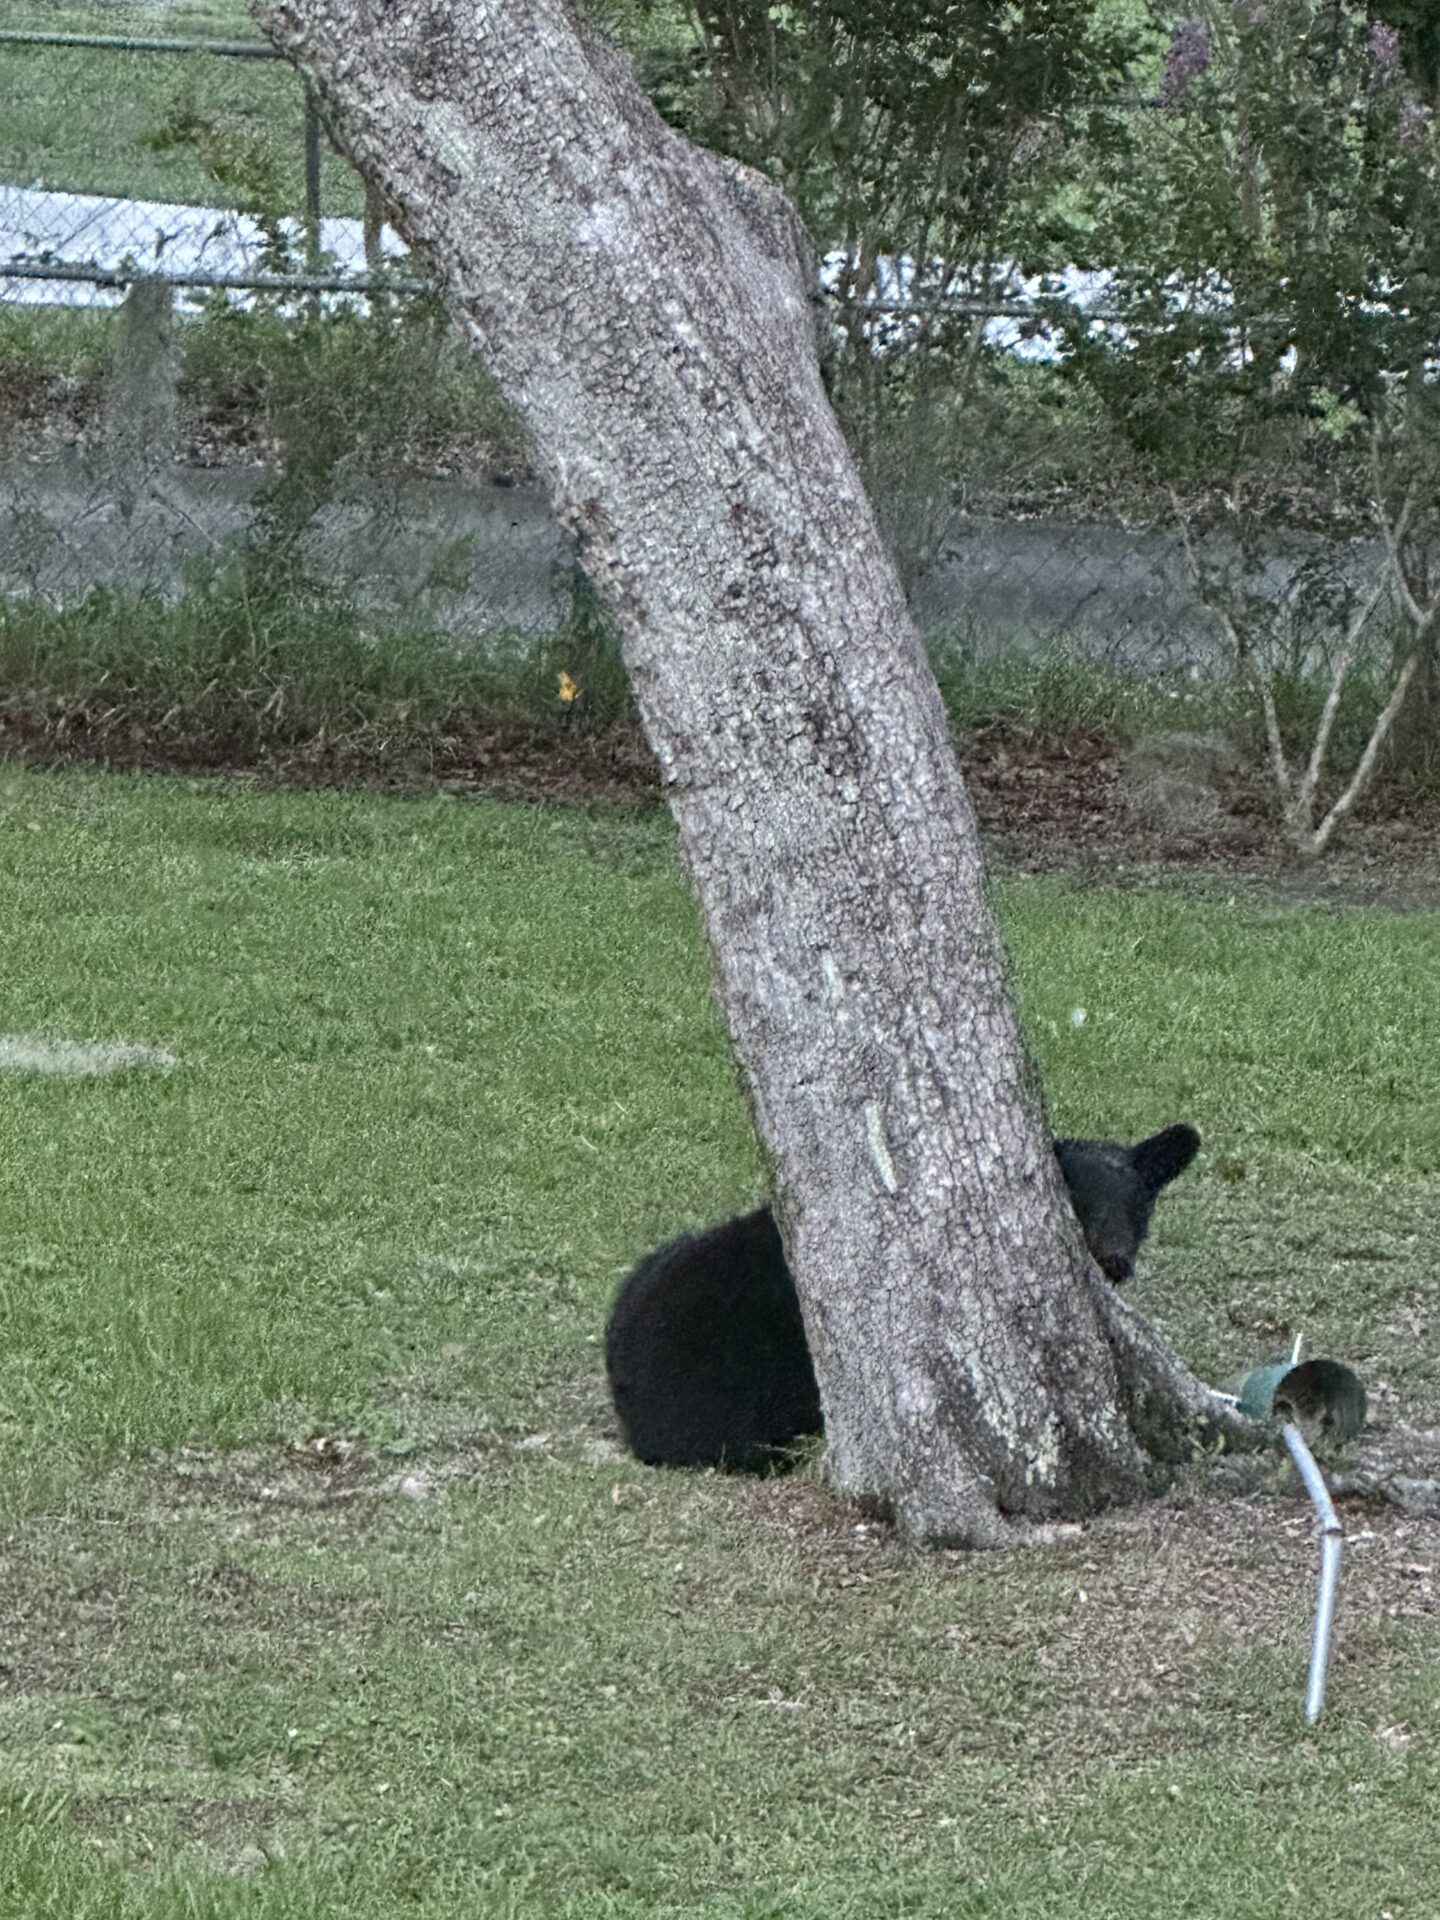 Black bear eating from bird feeder in Ocklawaha